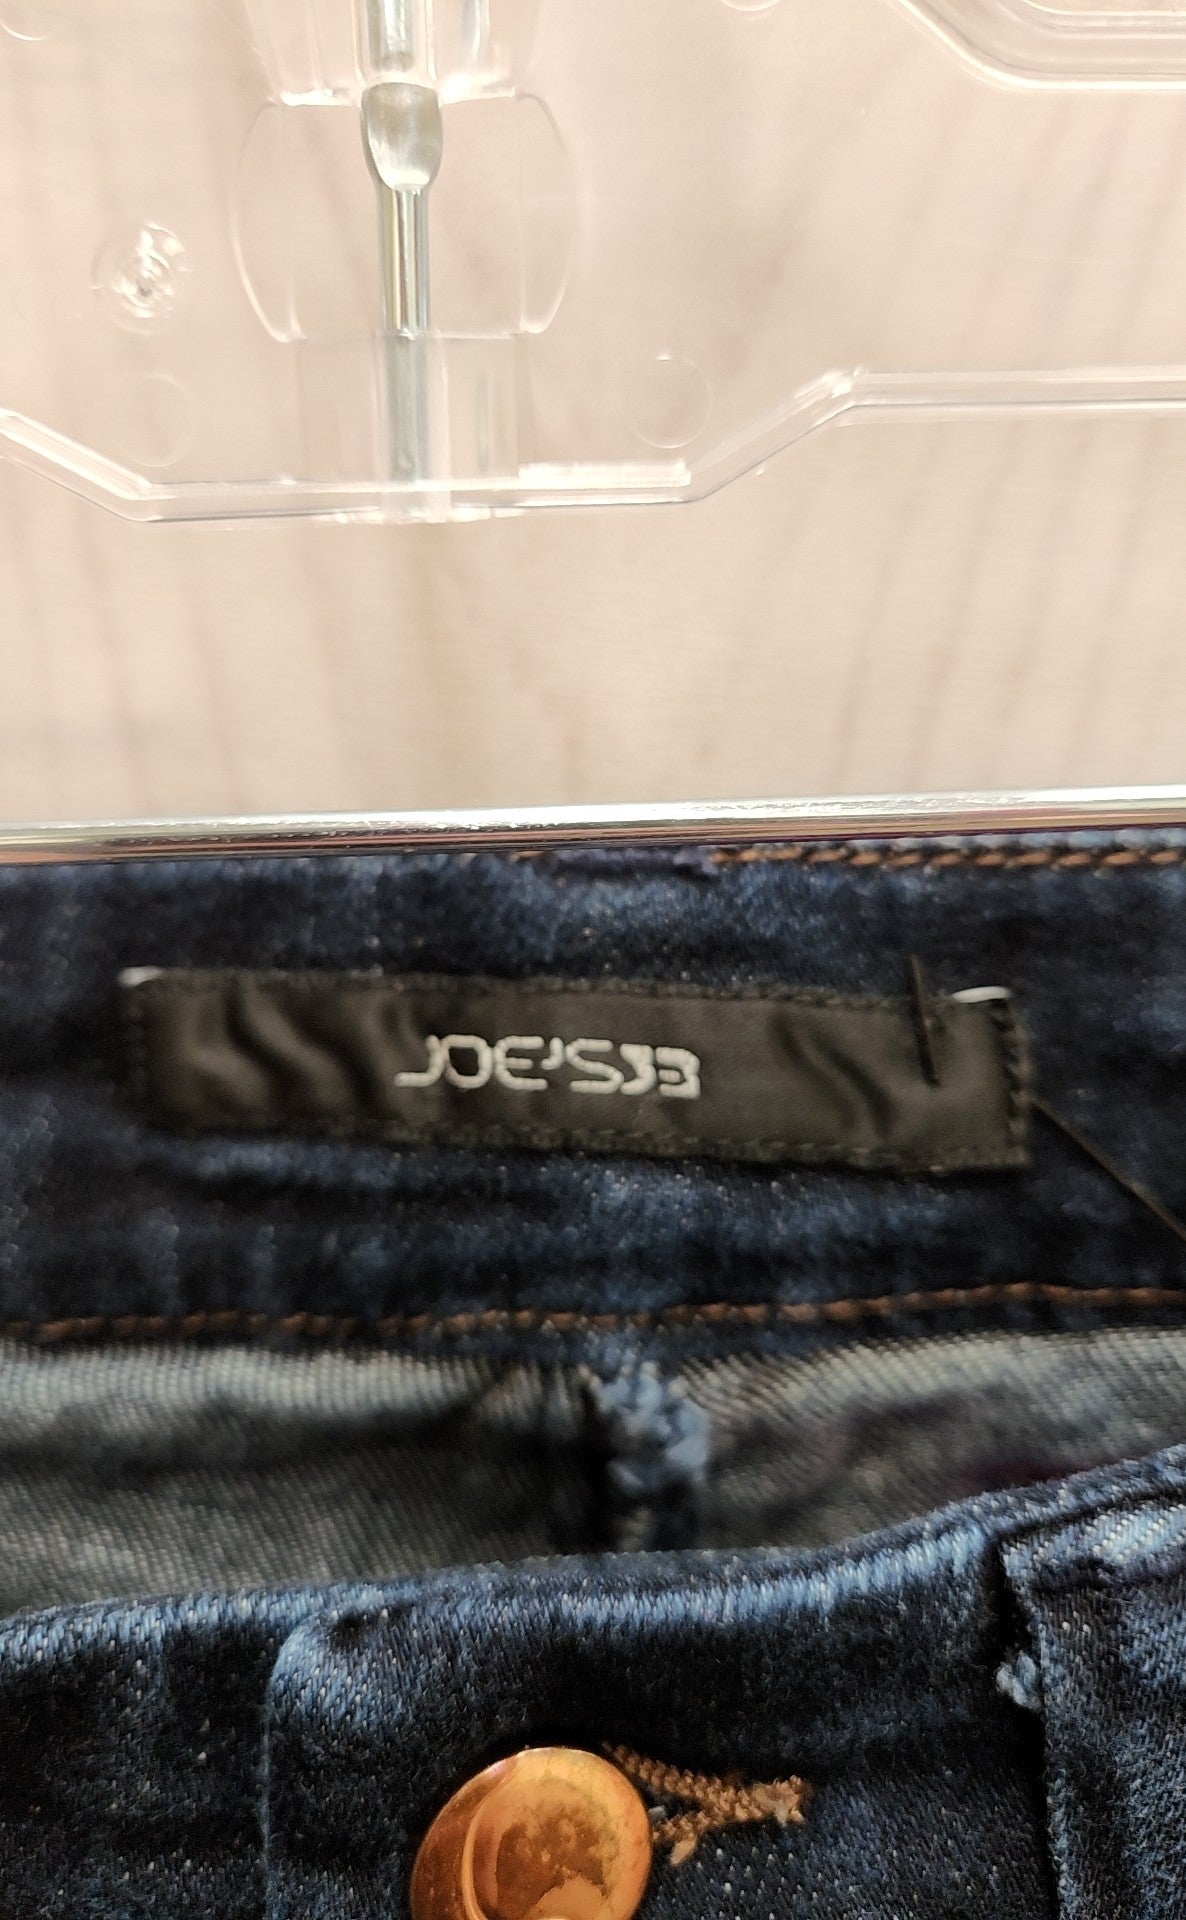 Joe's Women's Size 27 (3-4) Blue Jeans